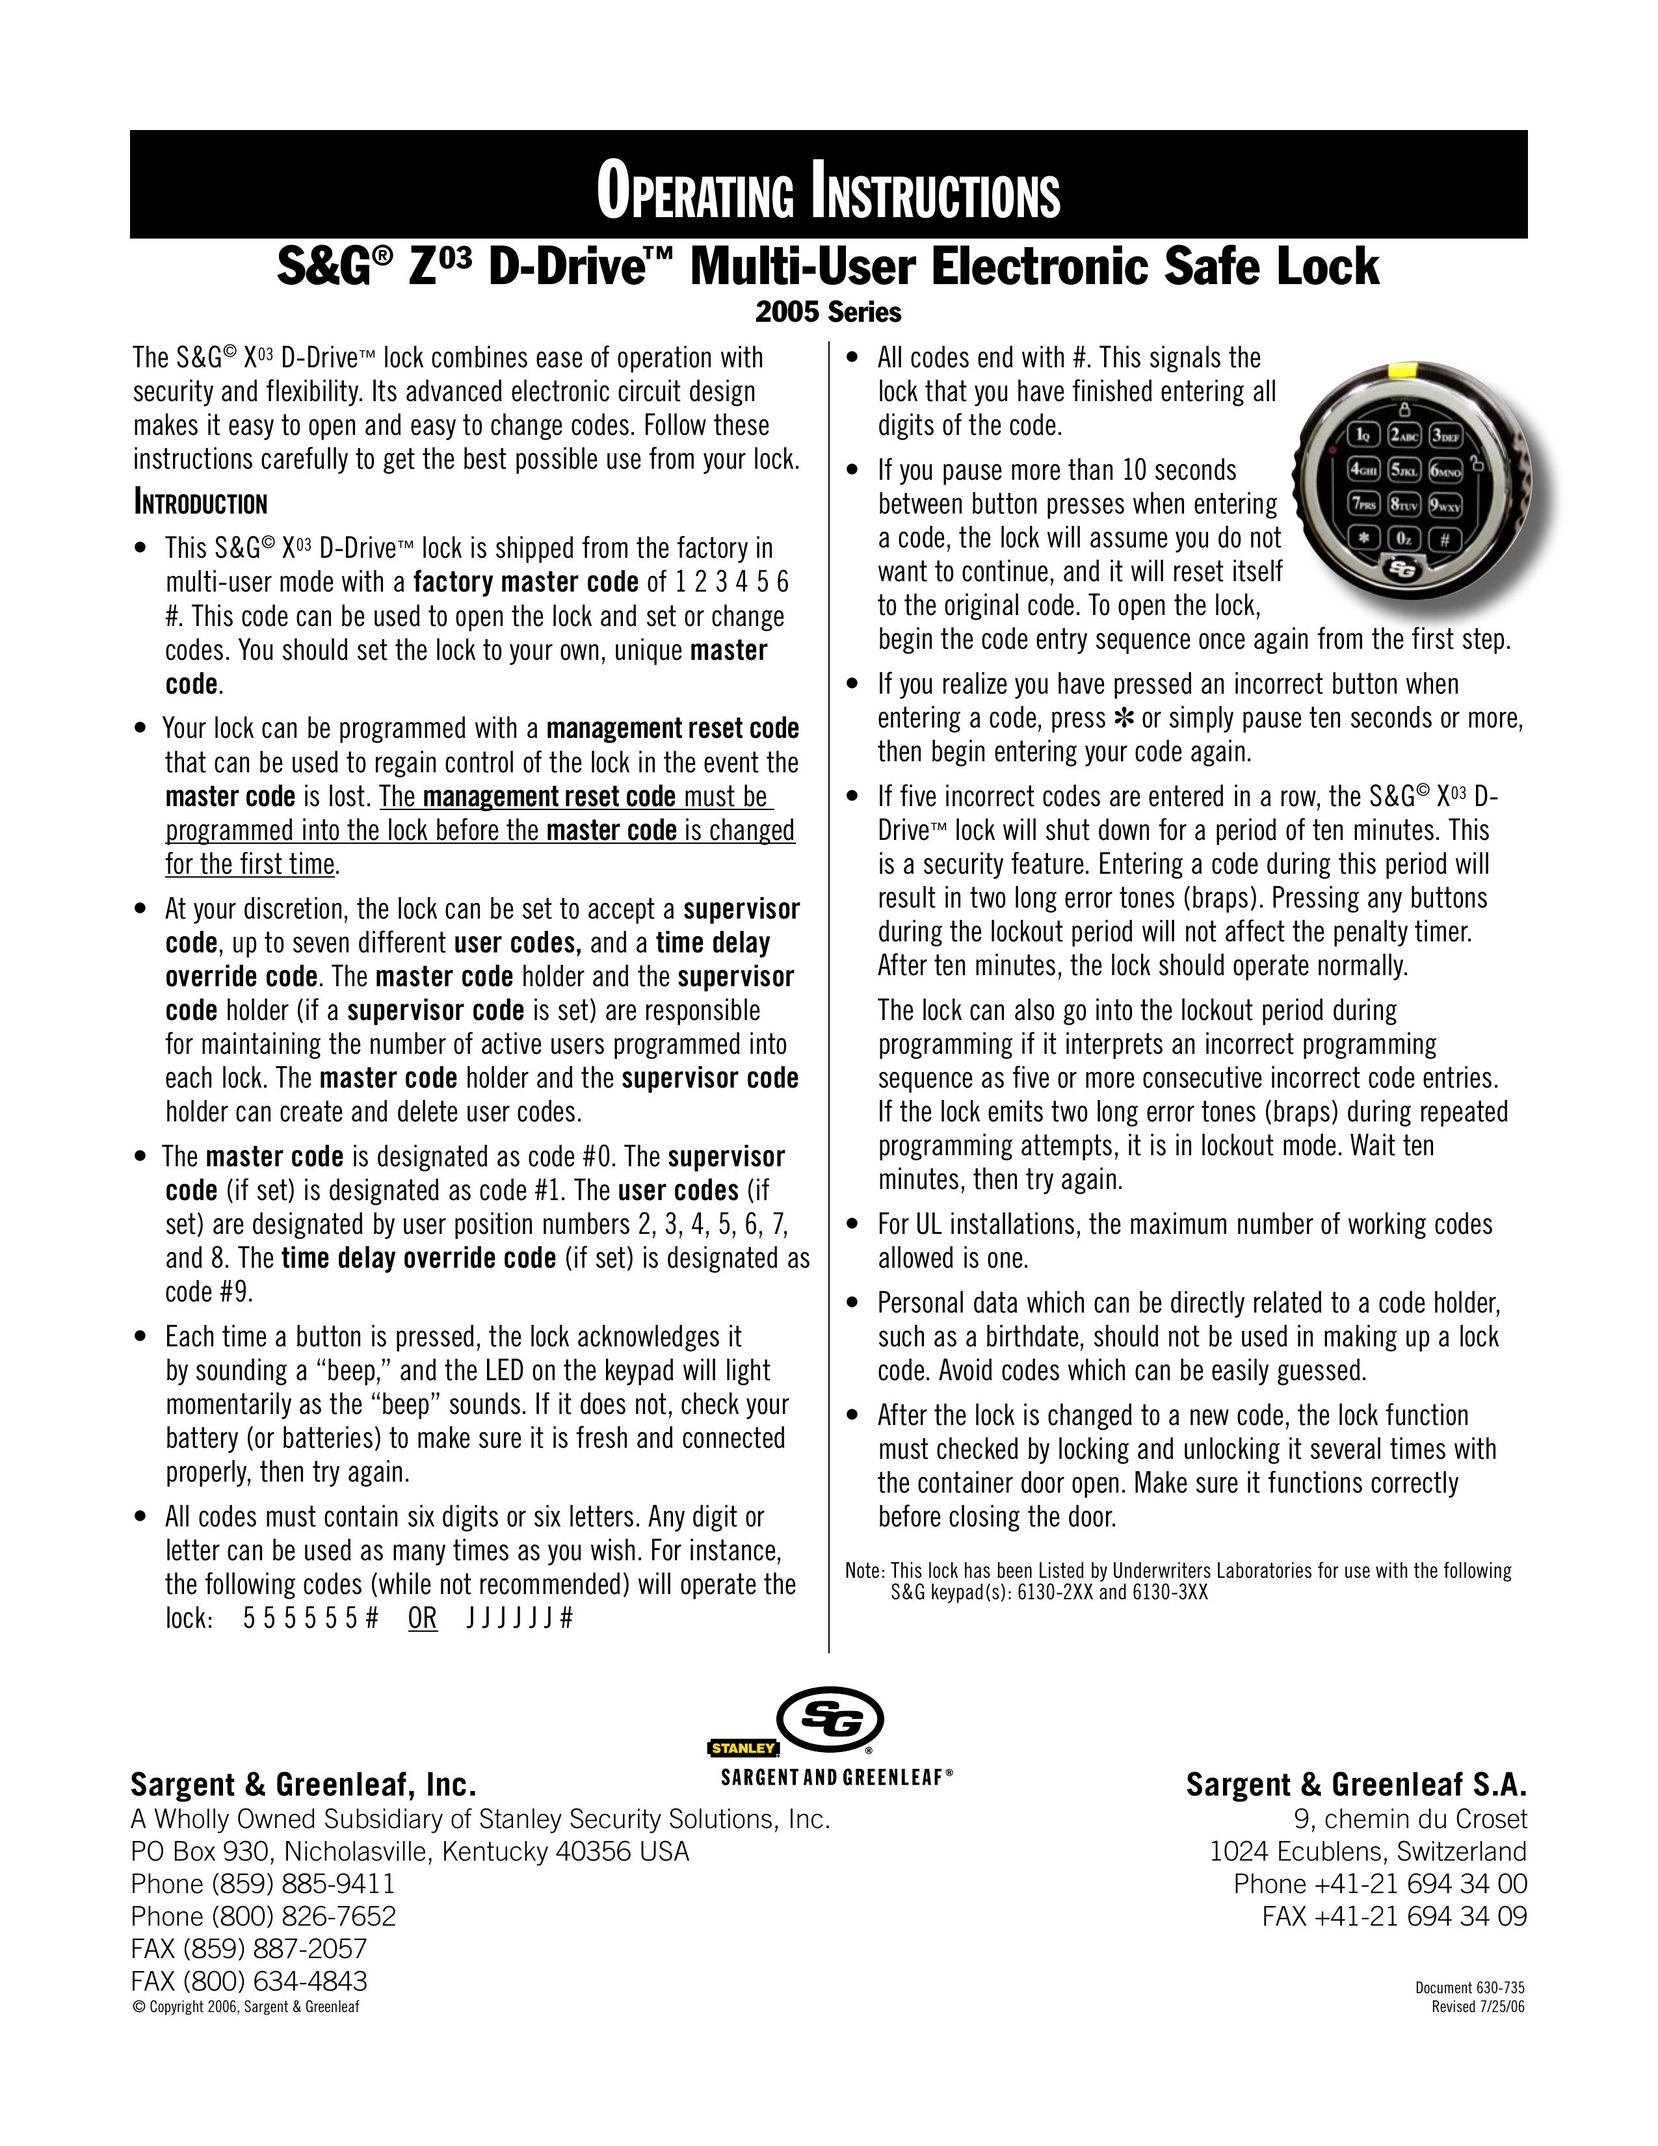 Stanley Black & Decker 2005 Series Door User Manual